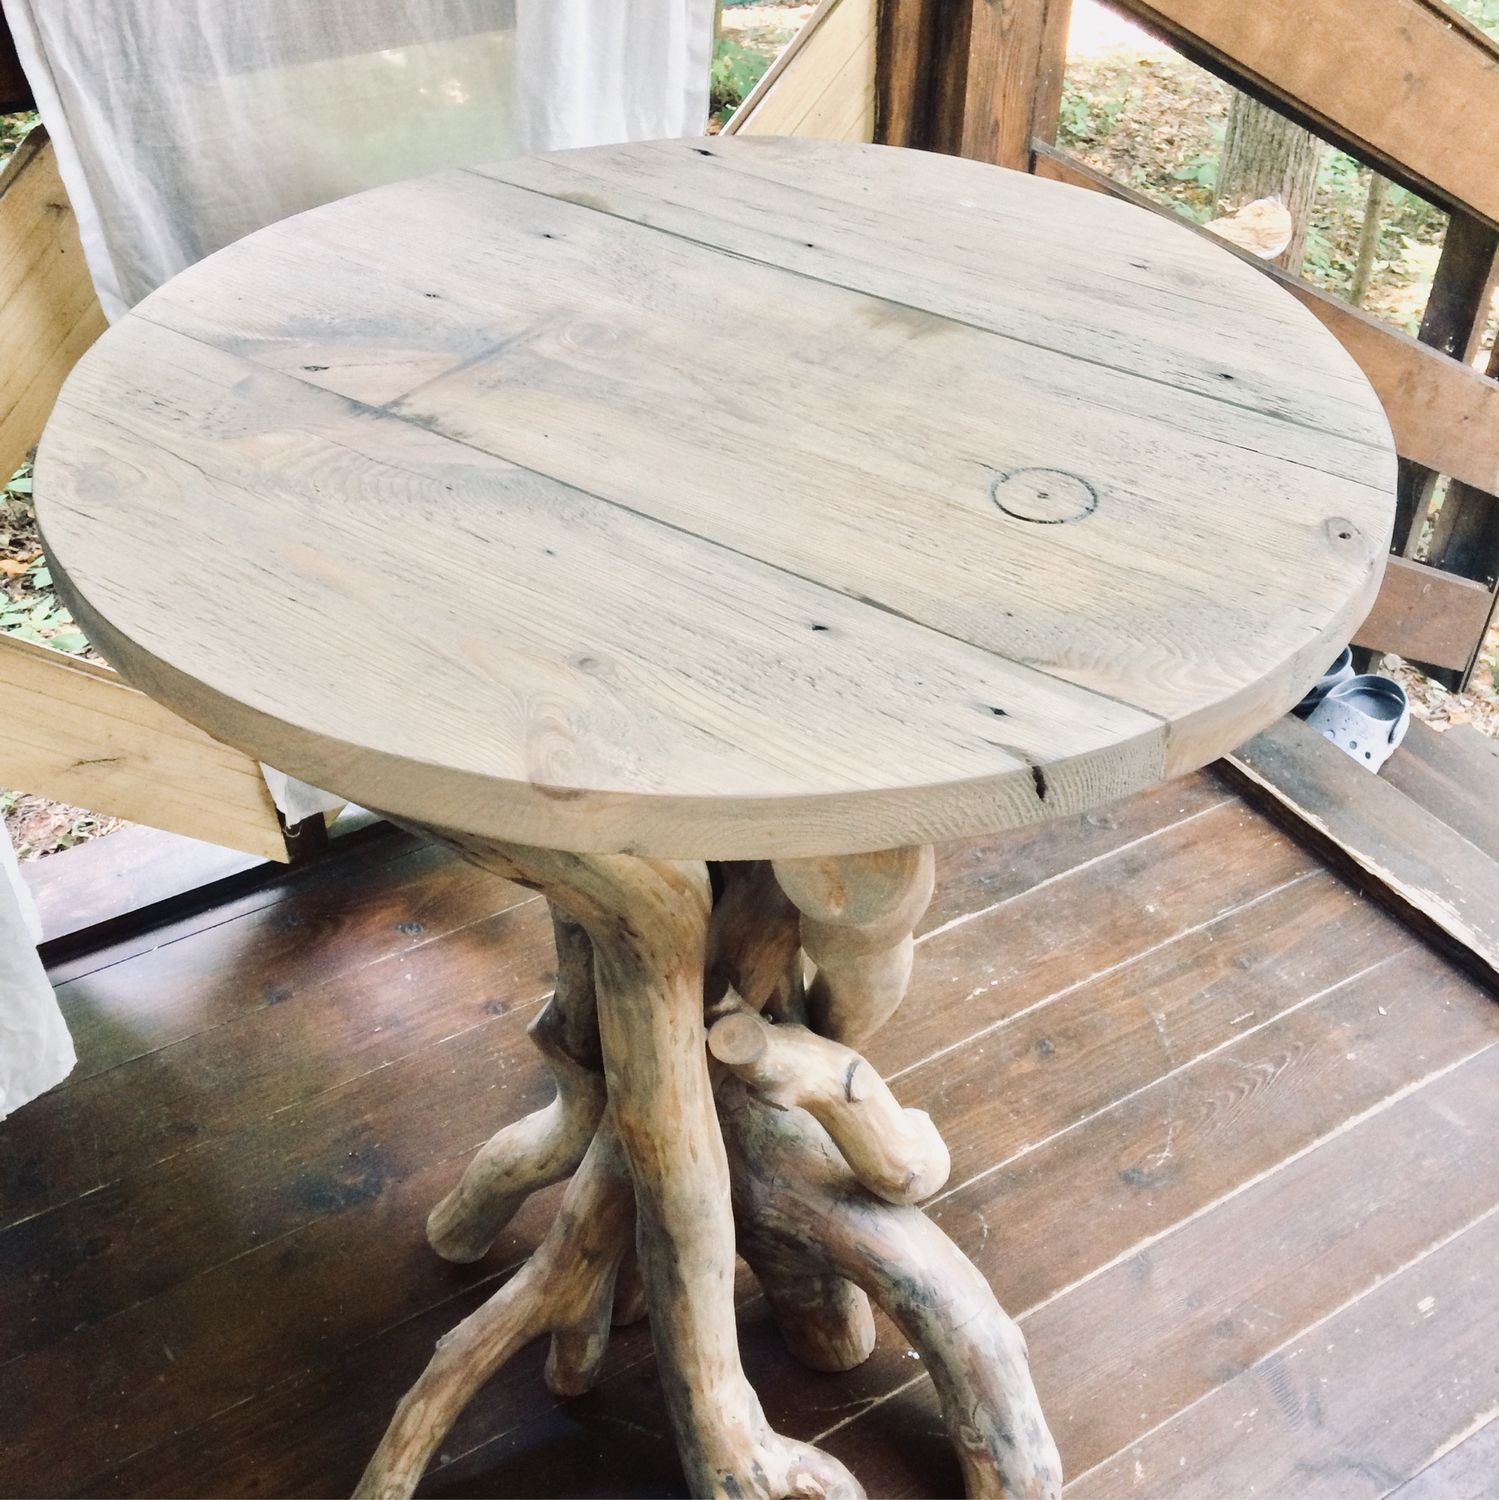 Фото круглый стол из дерева своими руками